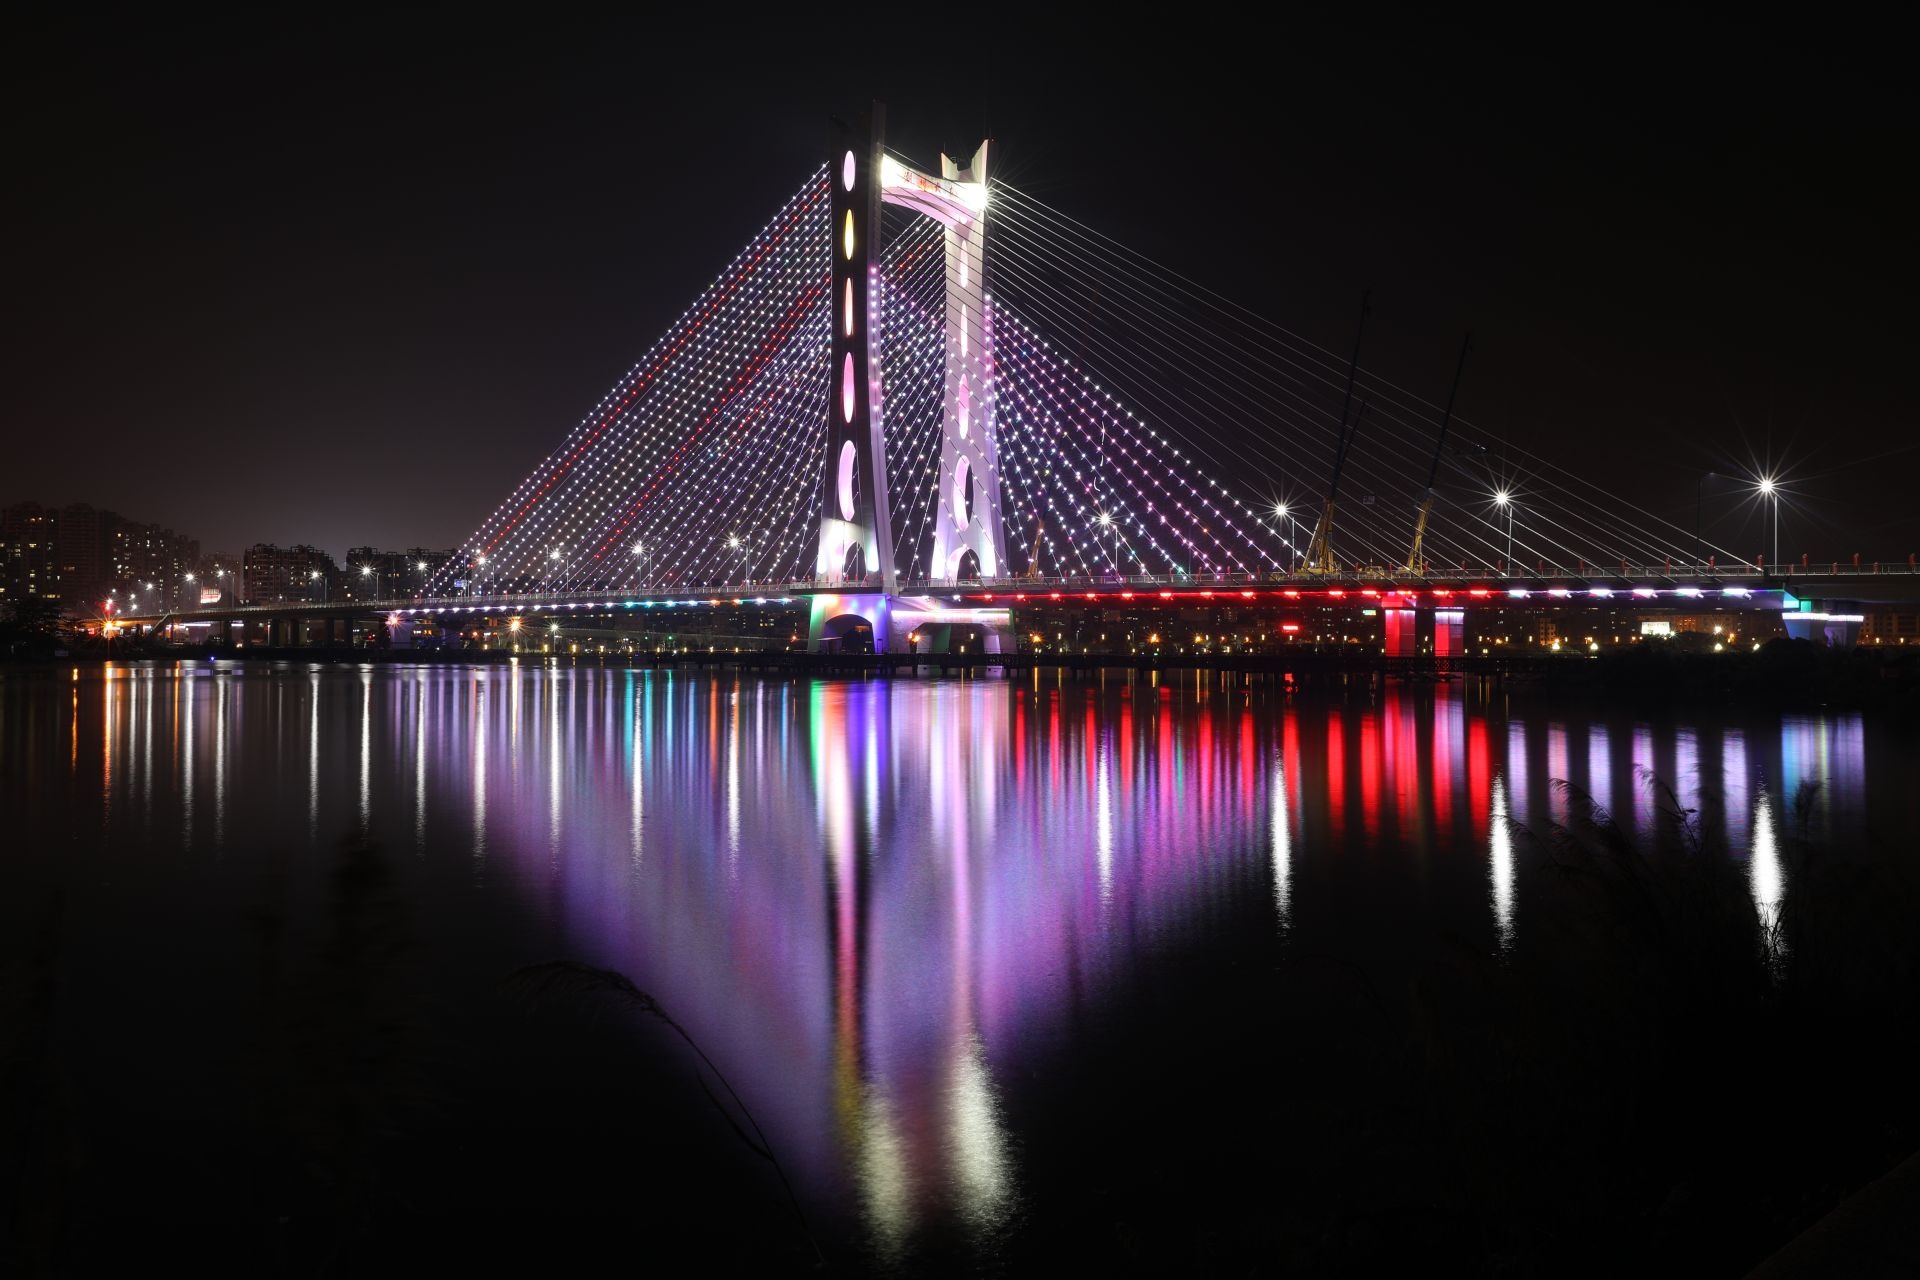 夜景图为1月14日晚拍摄的潮州大桥试亮灯